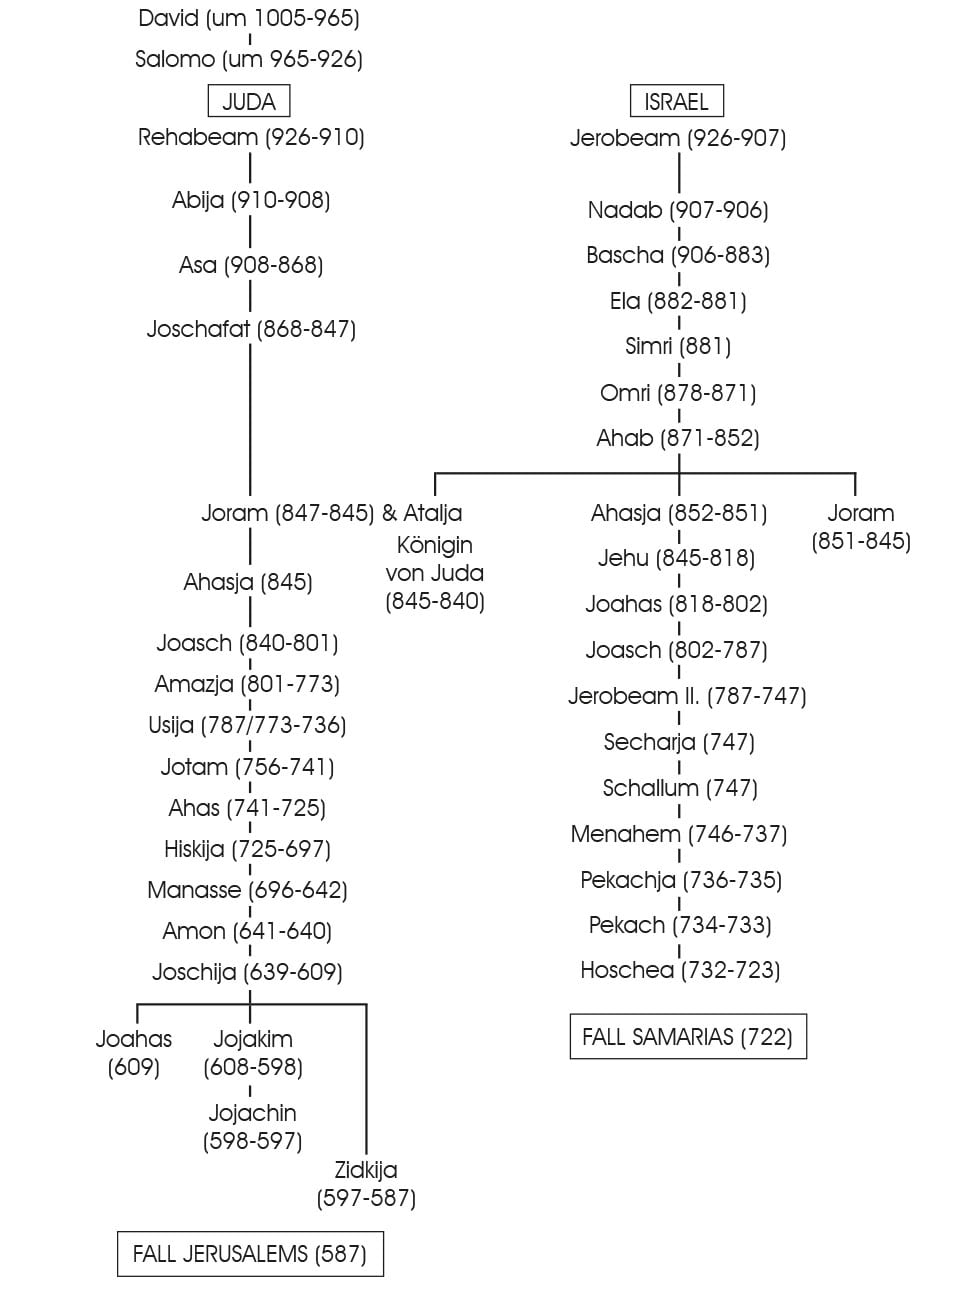 Stammbaum der Könige von Juda und Israel